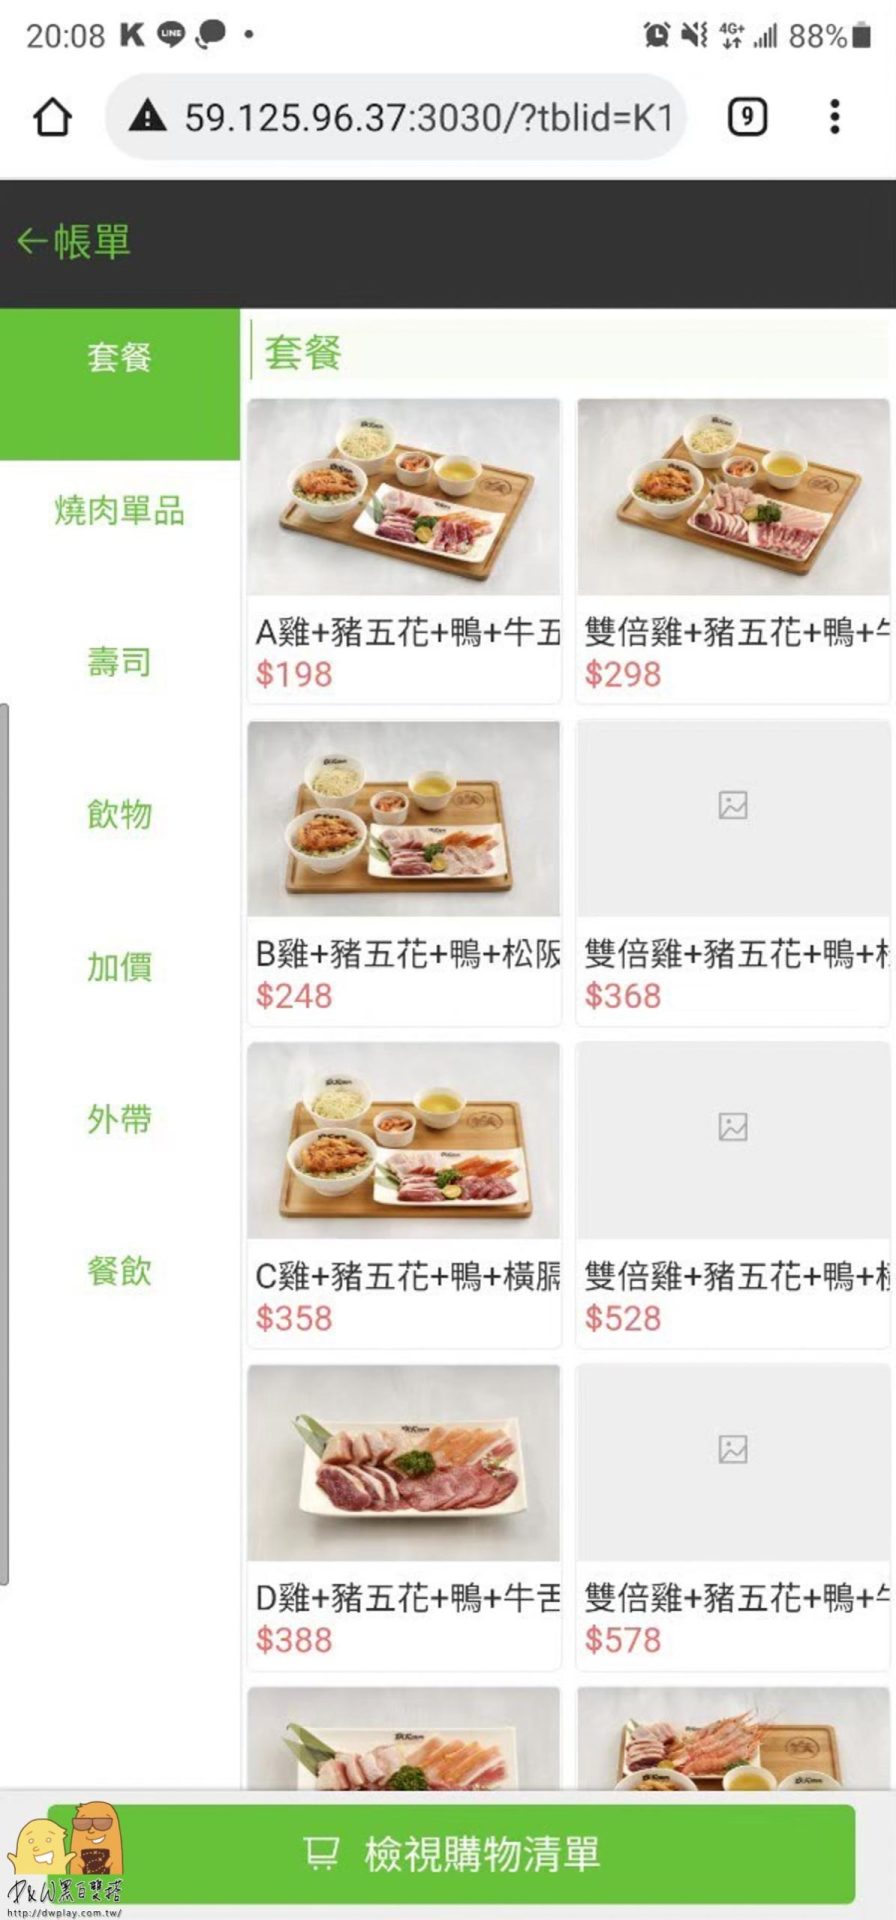 一個人燒烤,台北燒烤,台北美食,台北車站美食,台北捷運燒烤地圖